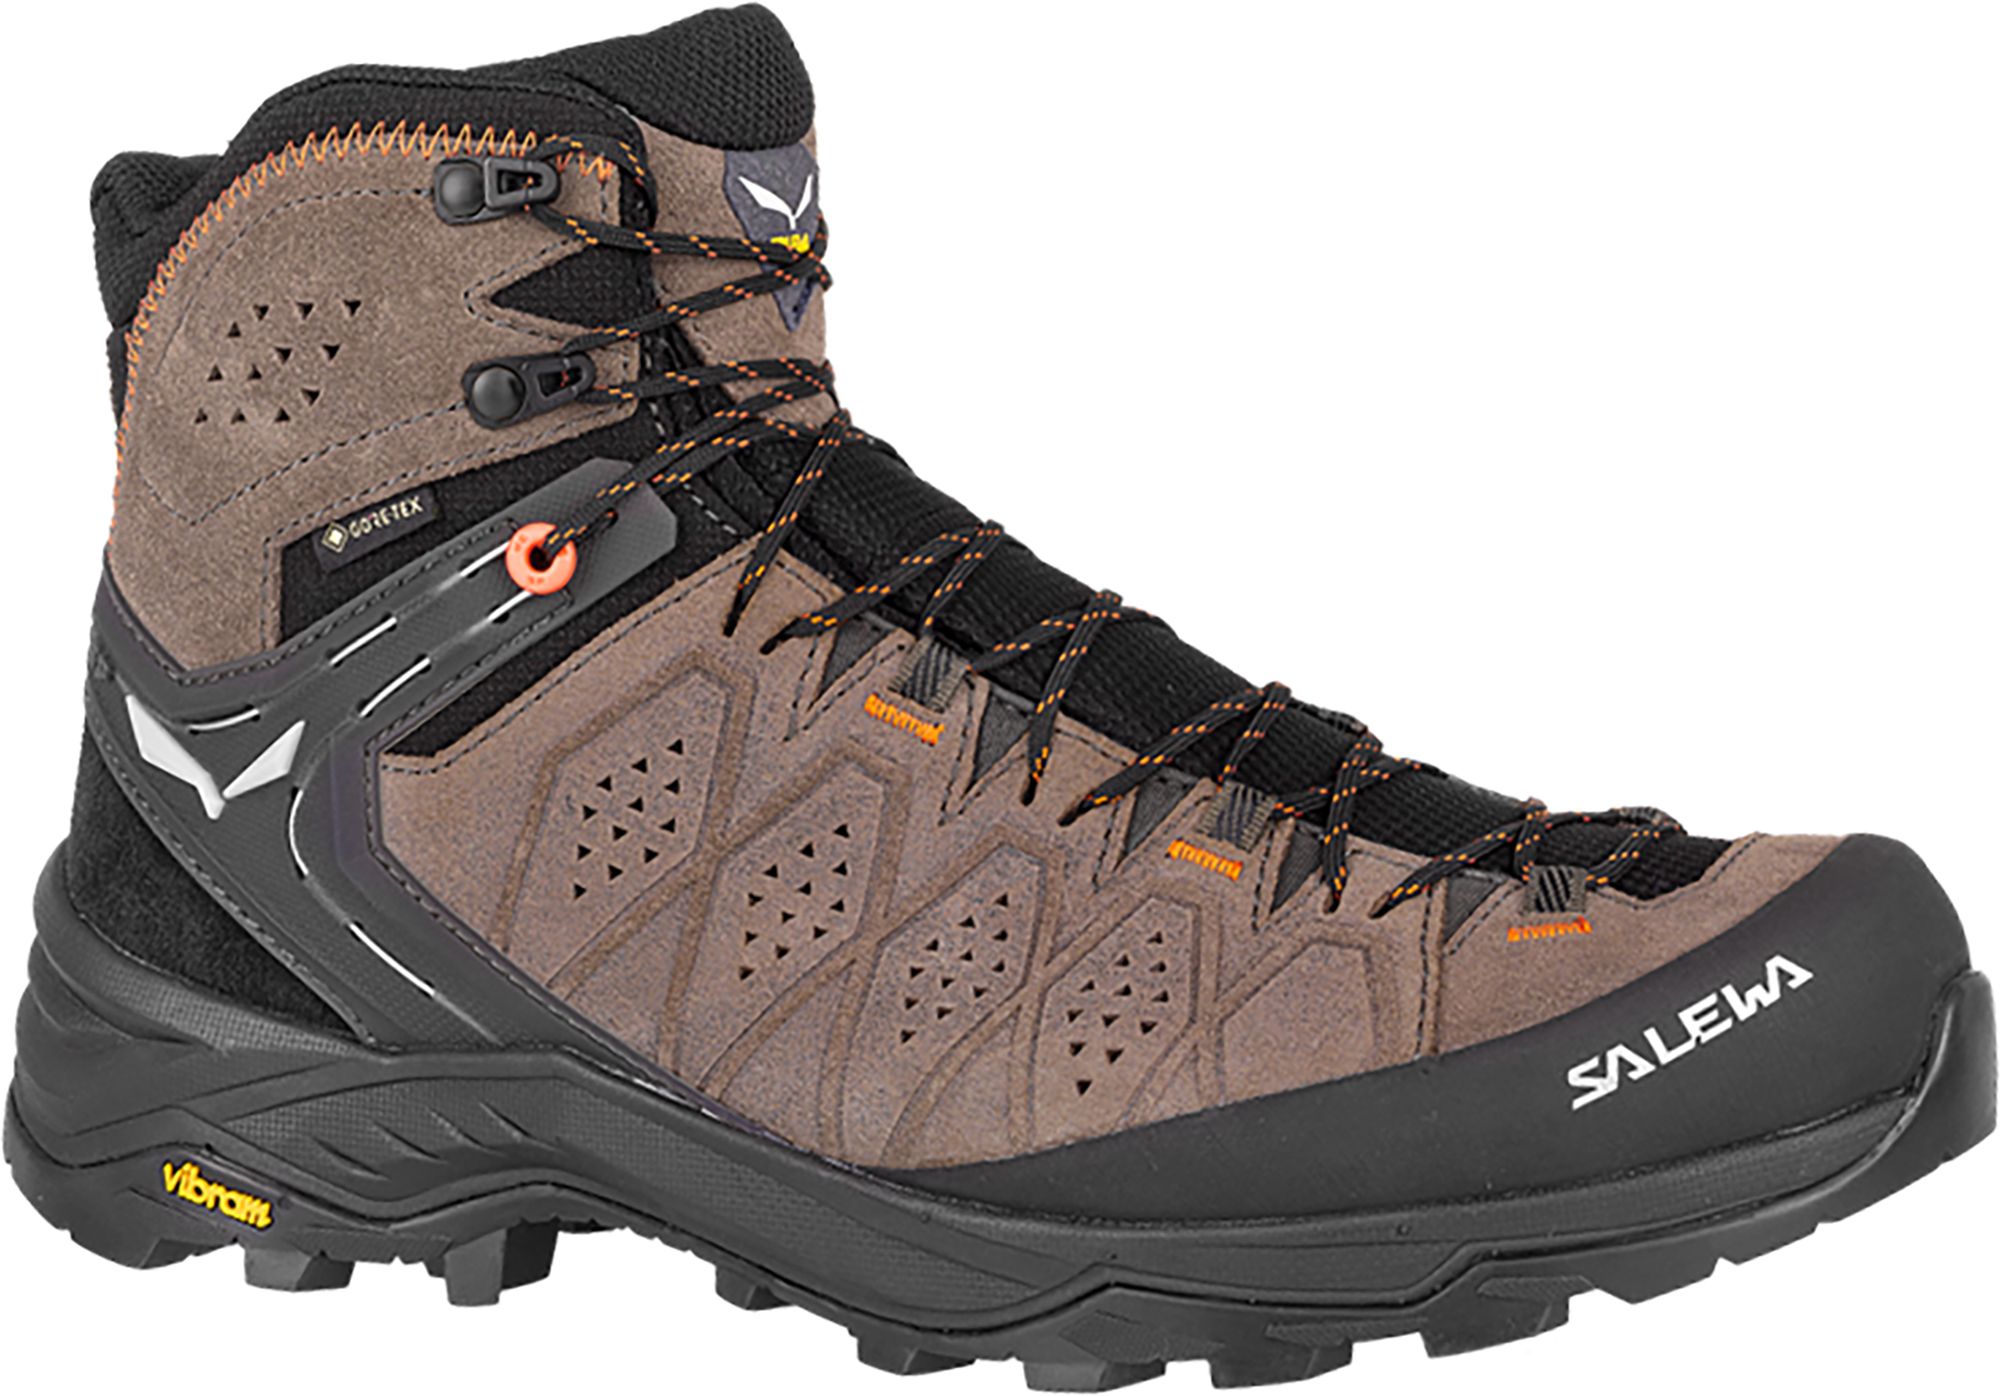 Photos - Trekking Shoes Salewa Men's Alp Trainer 2 GTX Hiking Boots, Size 13, Walnut 22IYPMMLPTRNR 